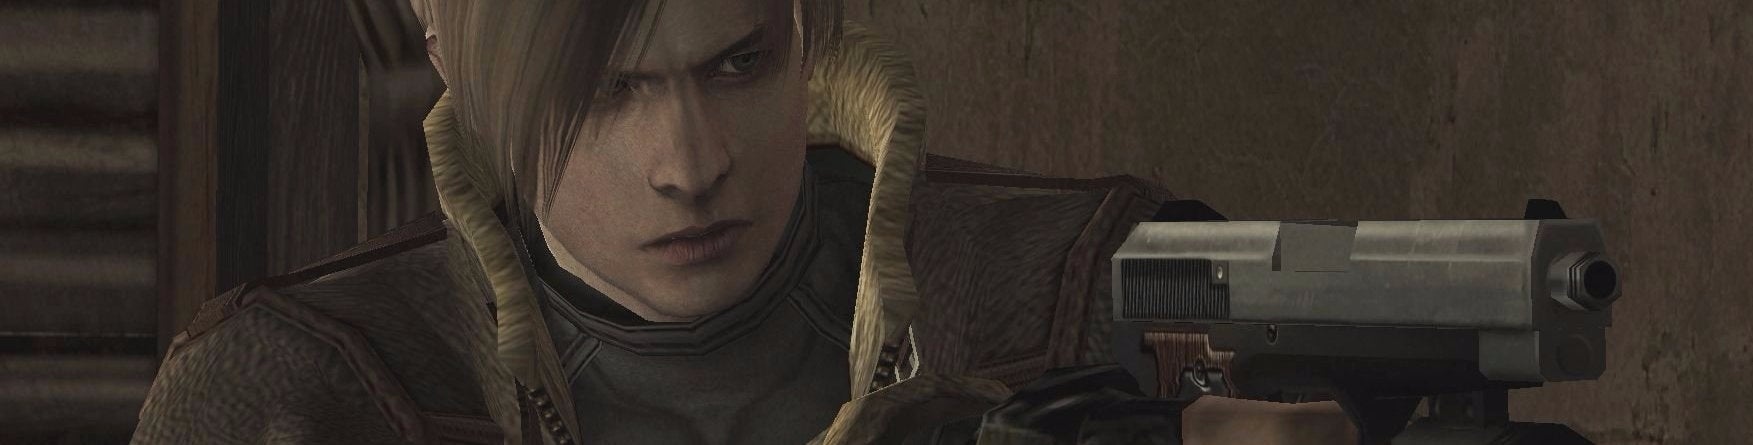 Obrazki dla Digital Foundry kontra Resident Evil 4 Remastered